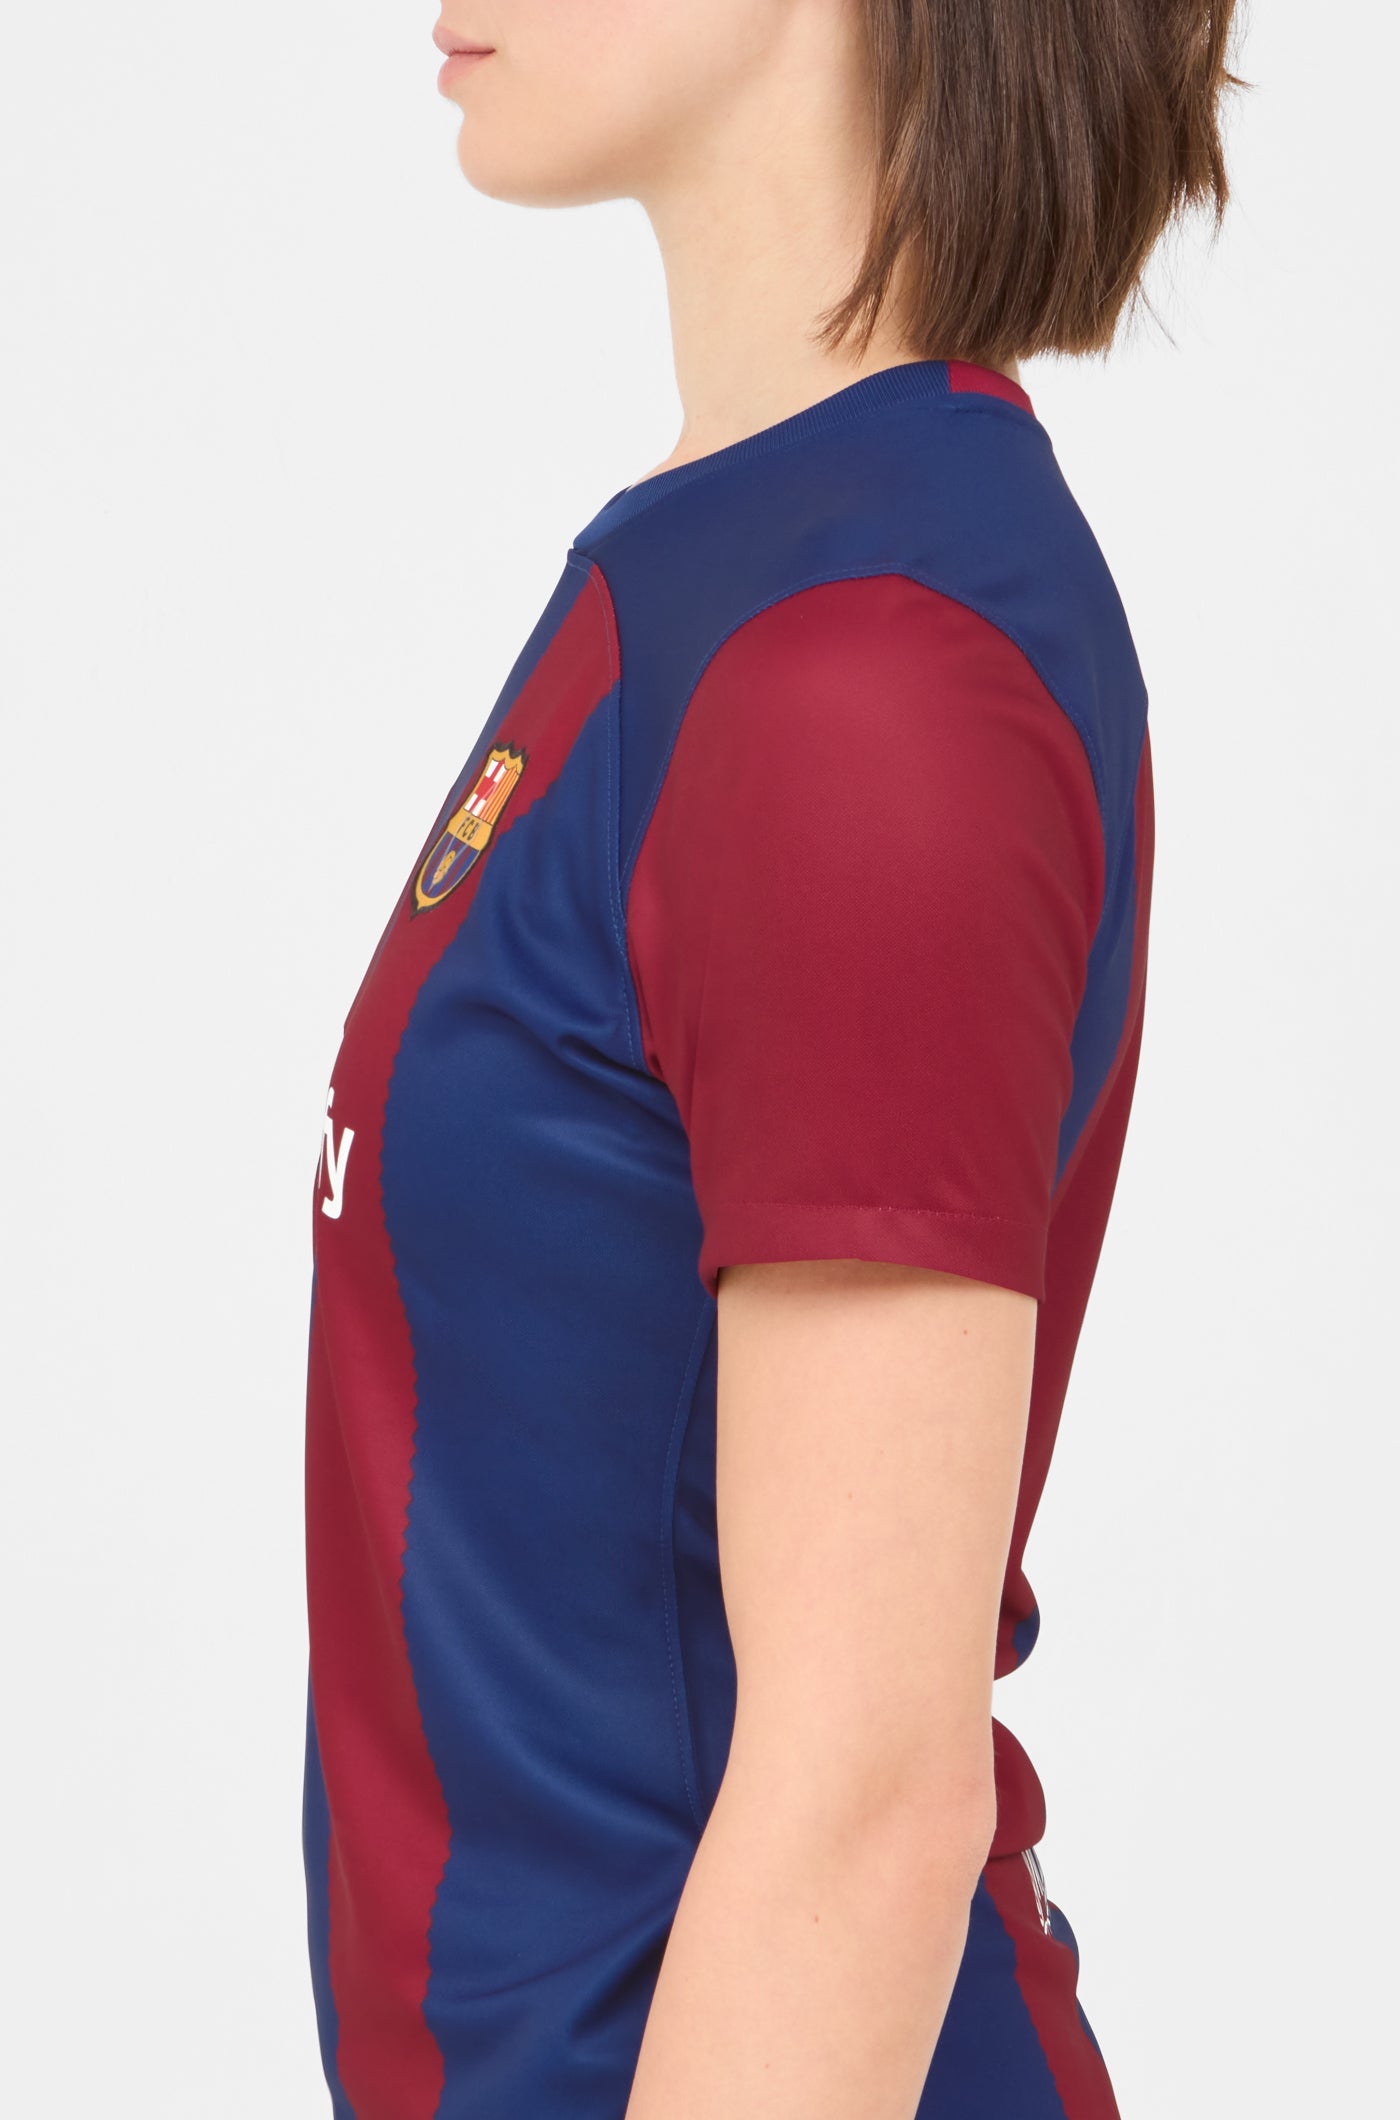 Camiseta primera equipación FC Barcelona 23/24 - Mujer 